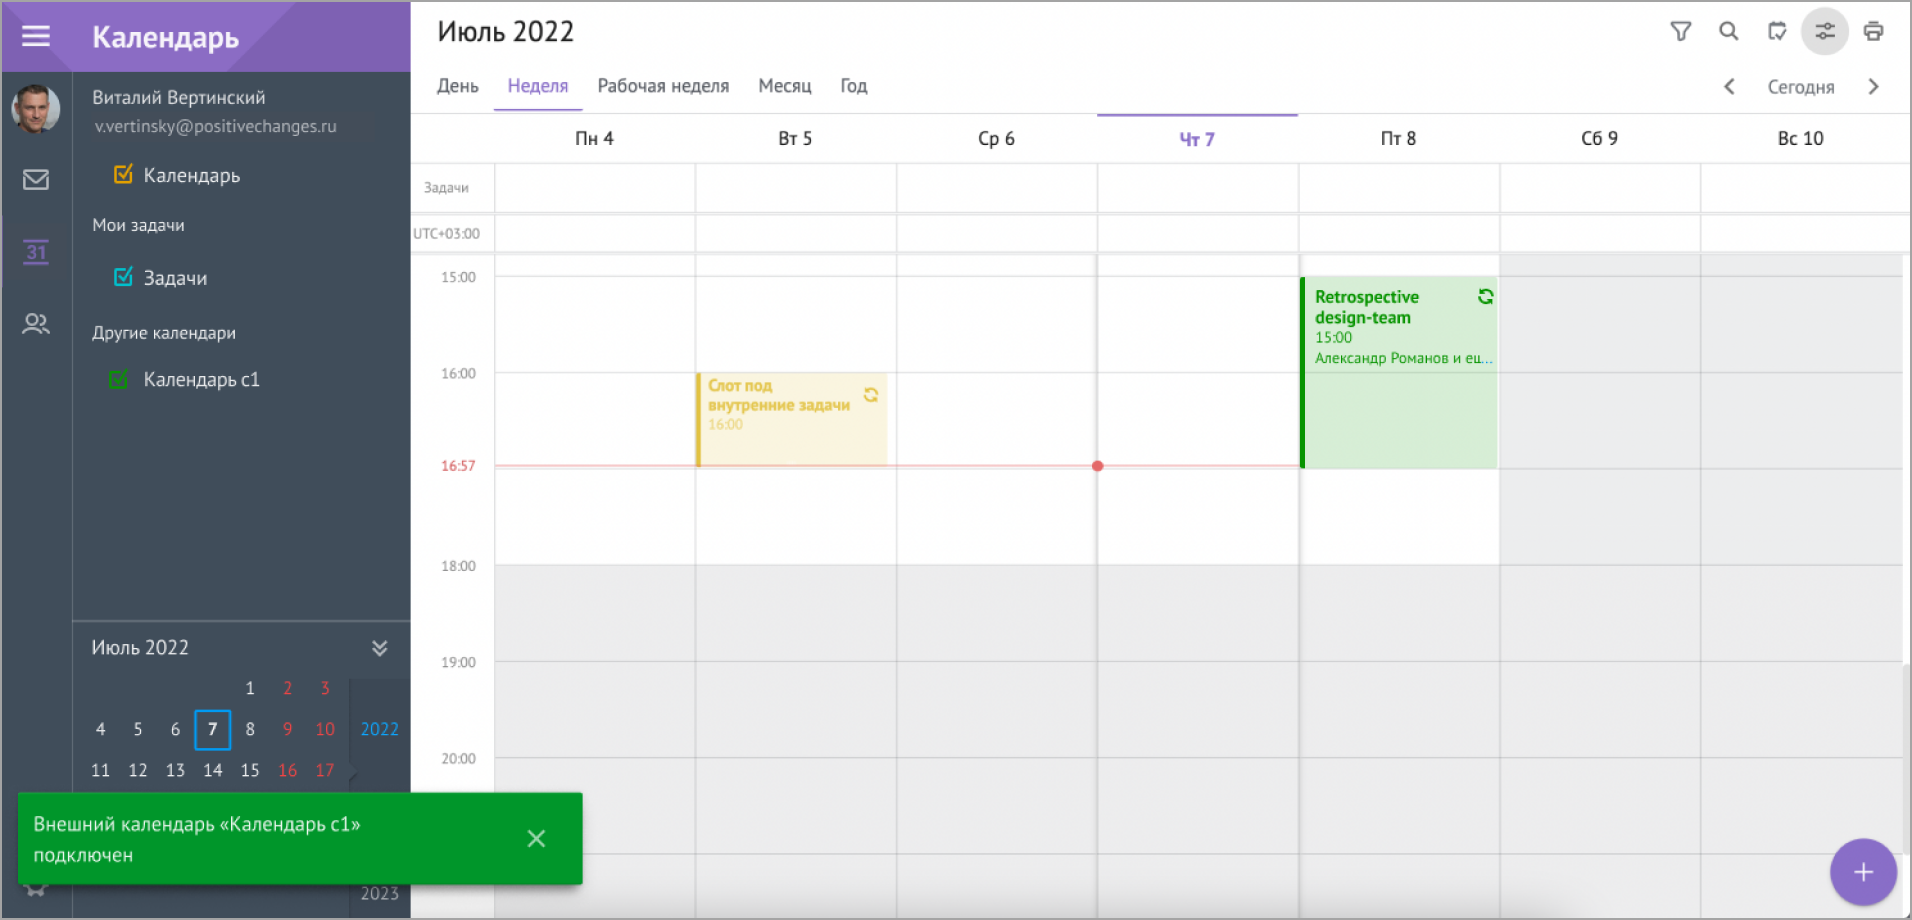 Отображение календарной сетки с подключенным внешним календарем